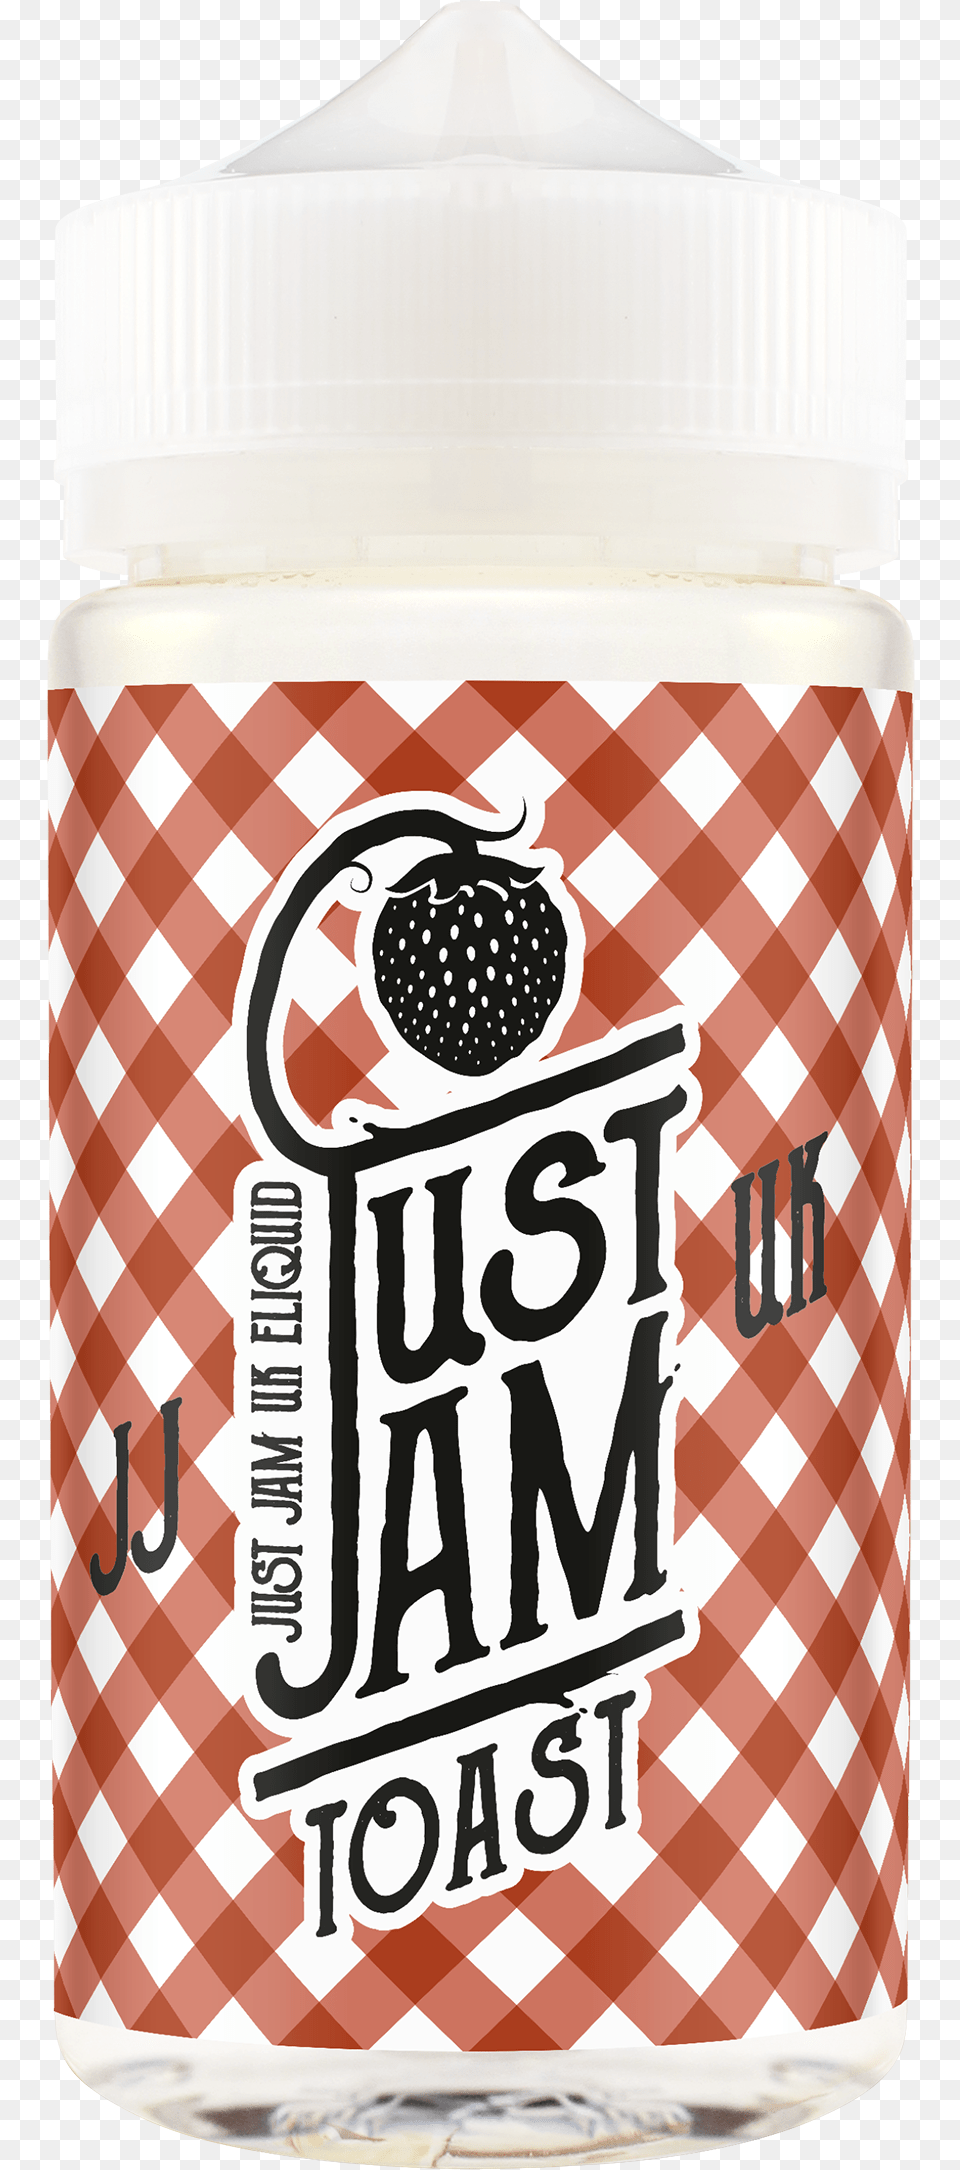 Just Jam On Toast, Jar, Food Png